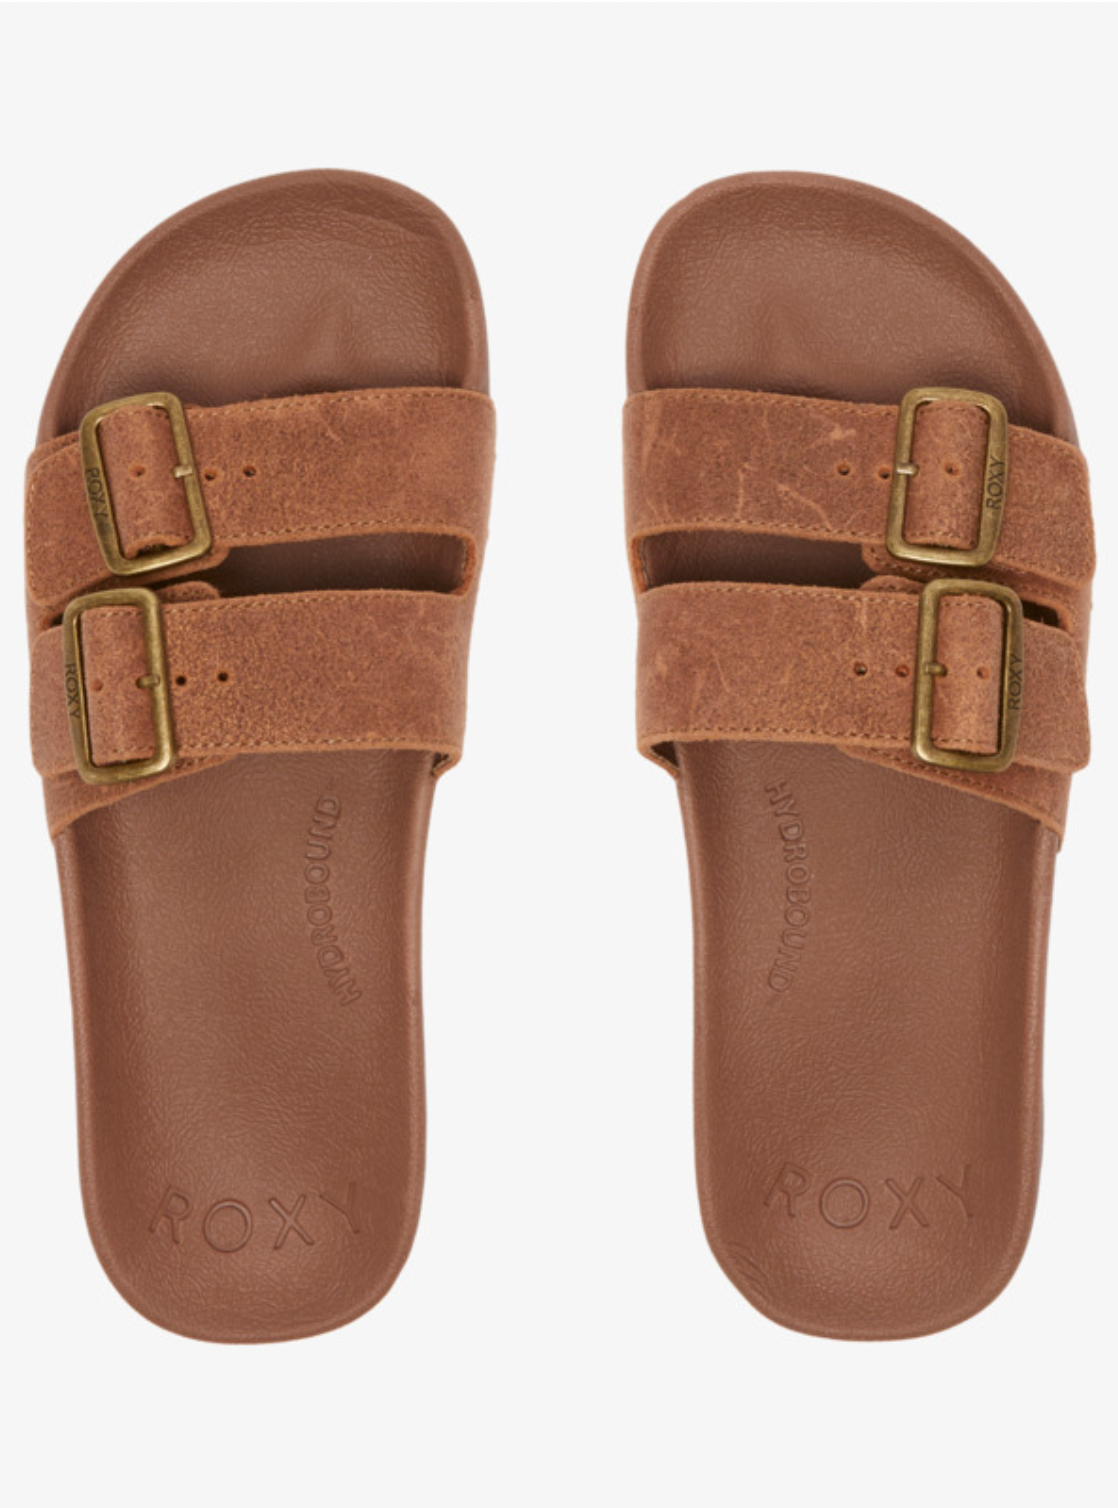 ROXY Slippy Nina - Slider Sandals for Women